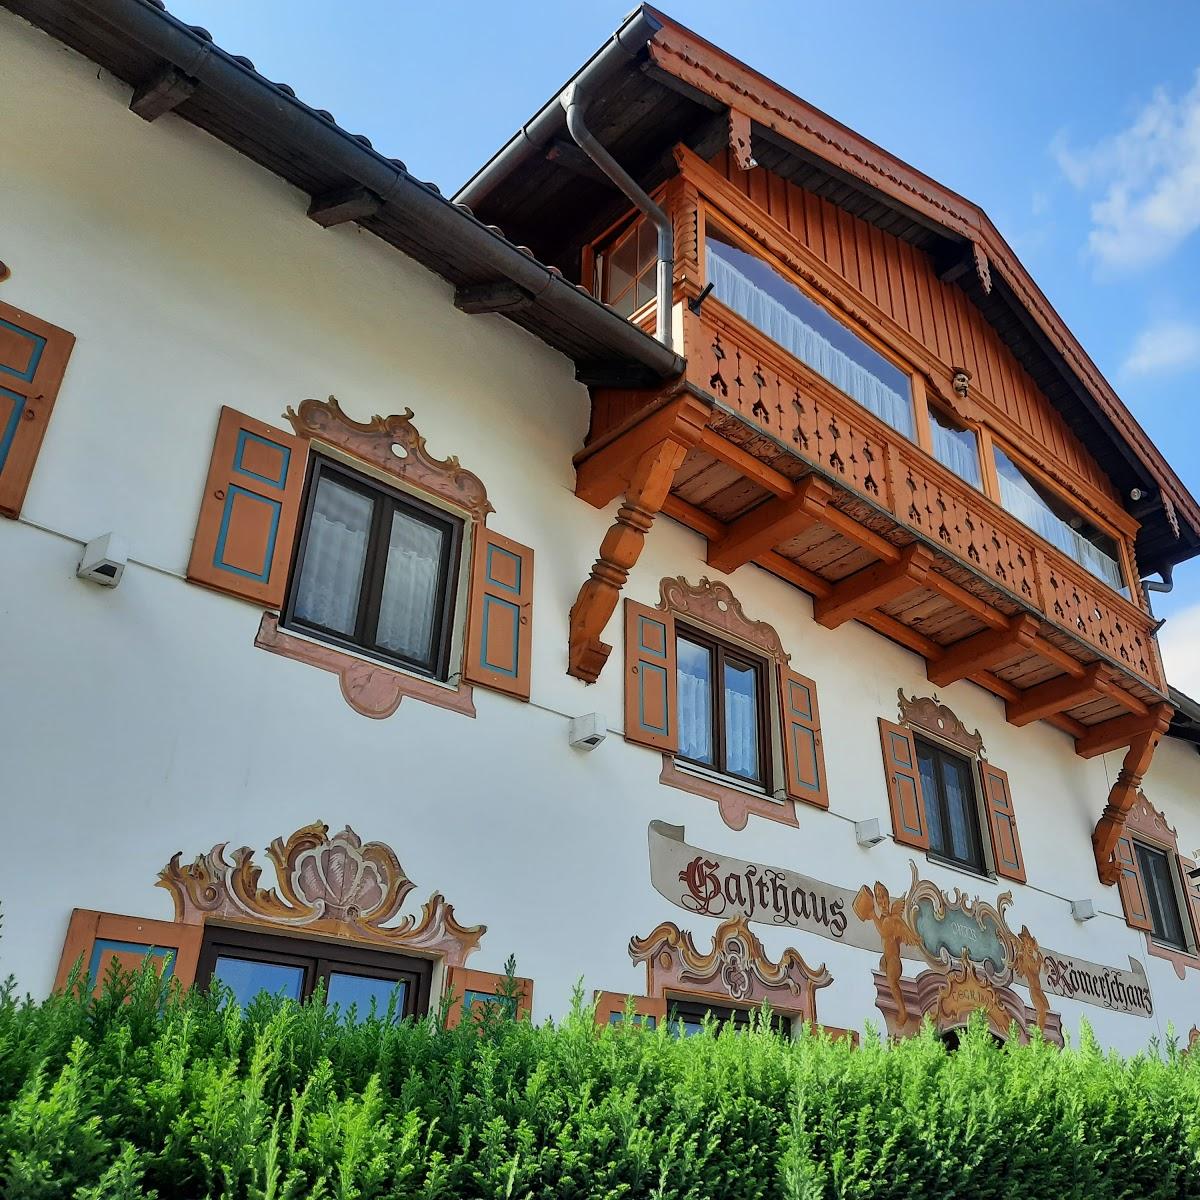 Restaurant "Gasthaus zur Römerschanz" in  Mittenwald